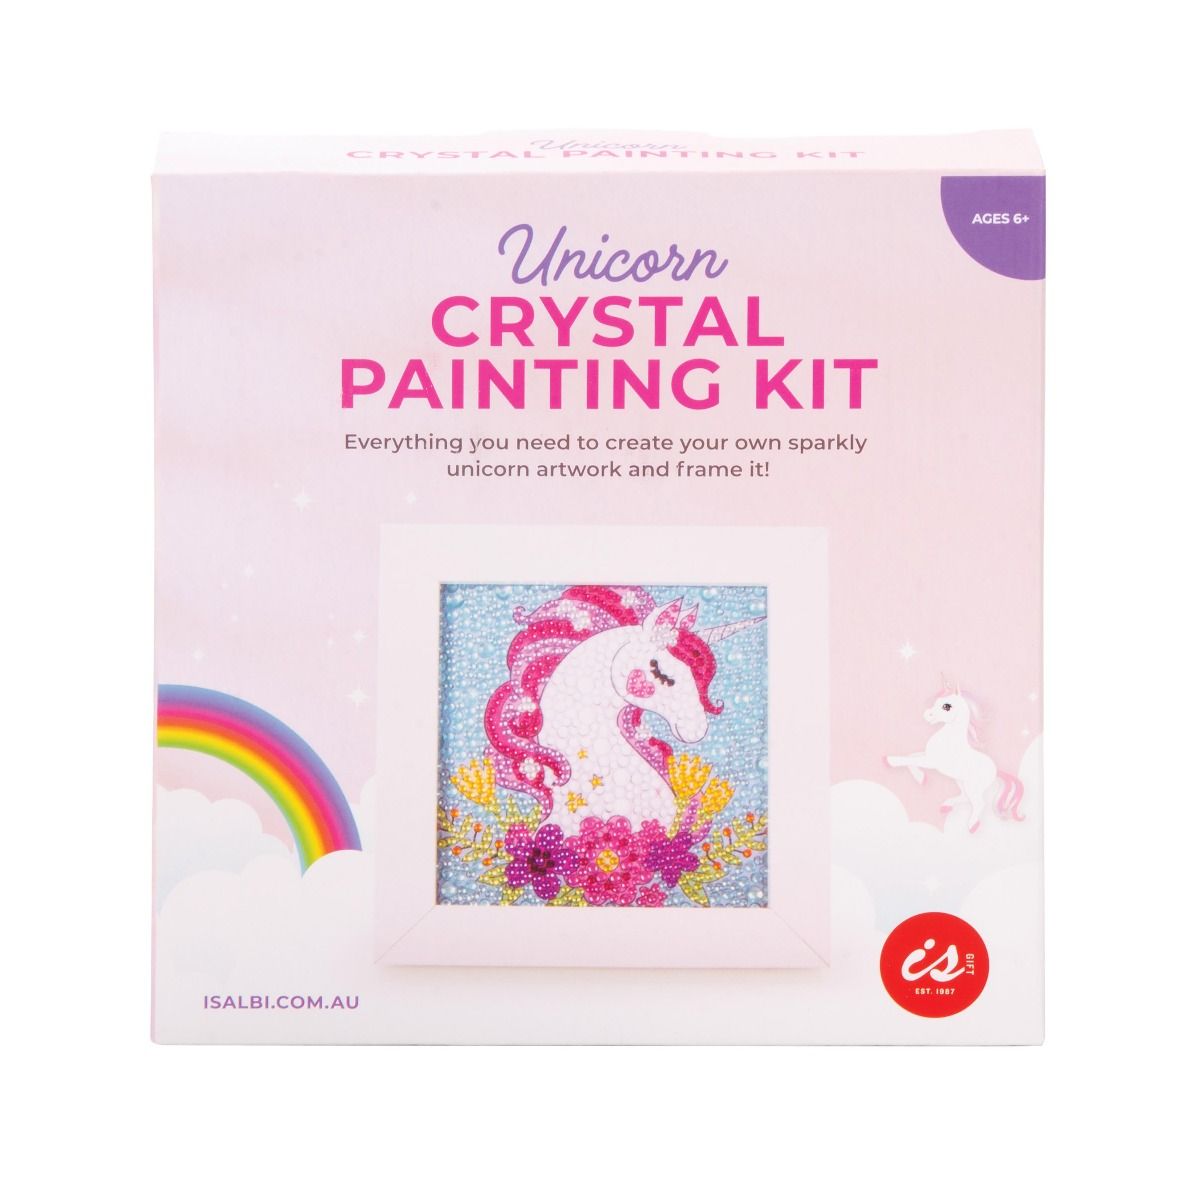 Unicorn Crystal Painting Kit